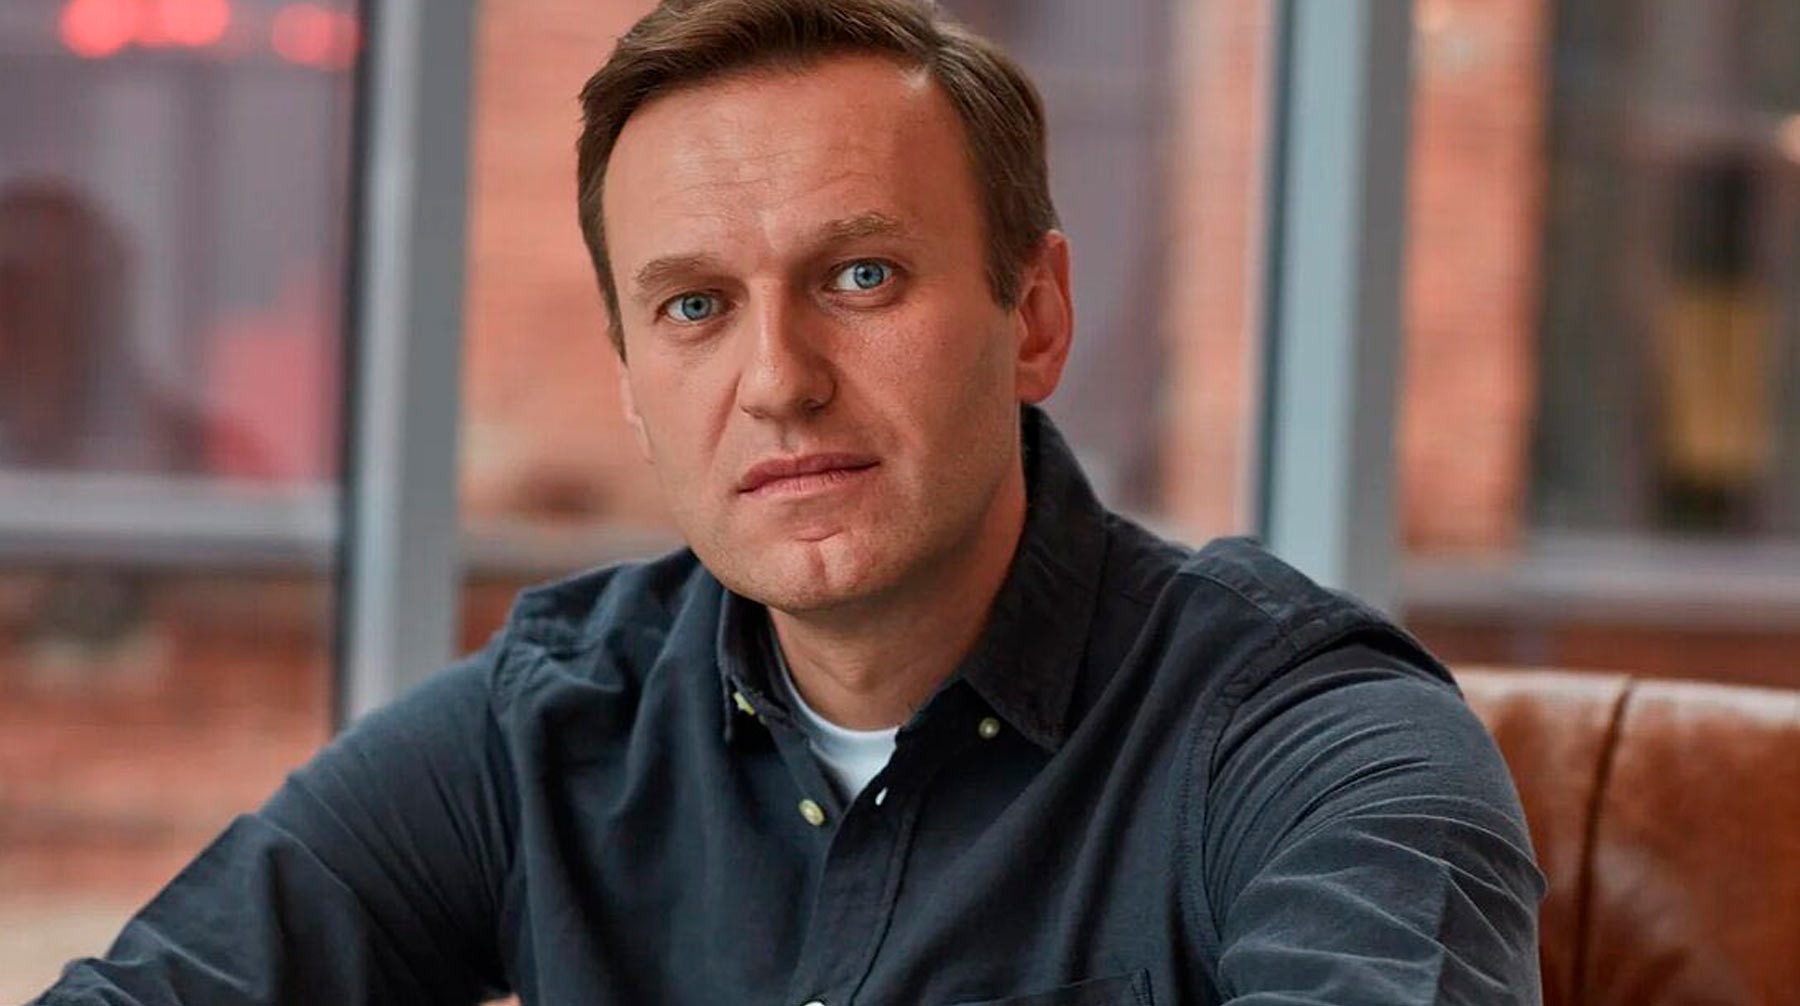 Dailystorm - Главврач омской больницы: Рабочий диагноз Навального — нарушение обмена веществ